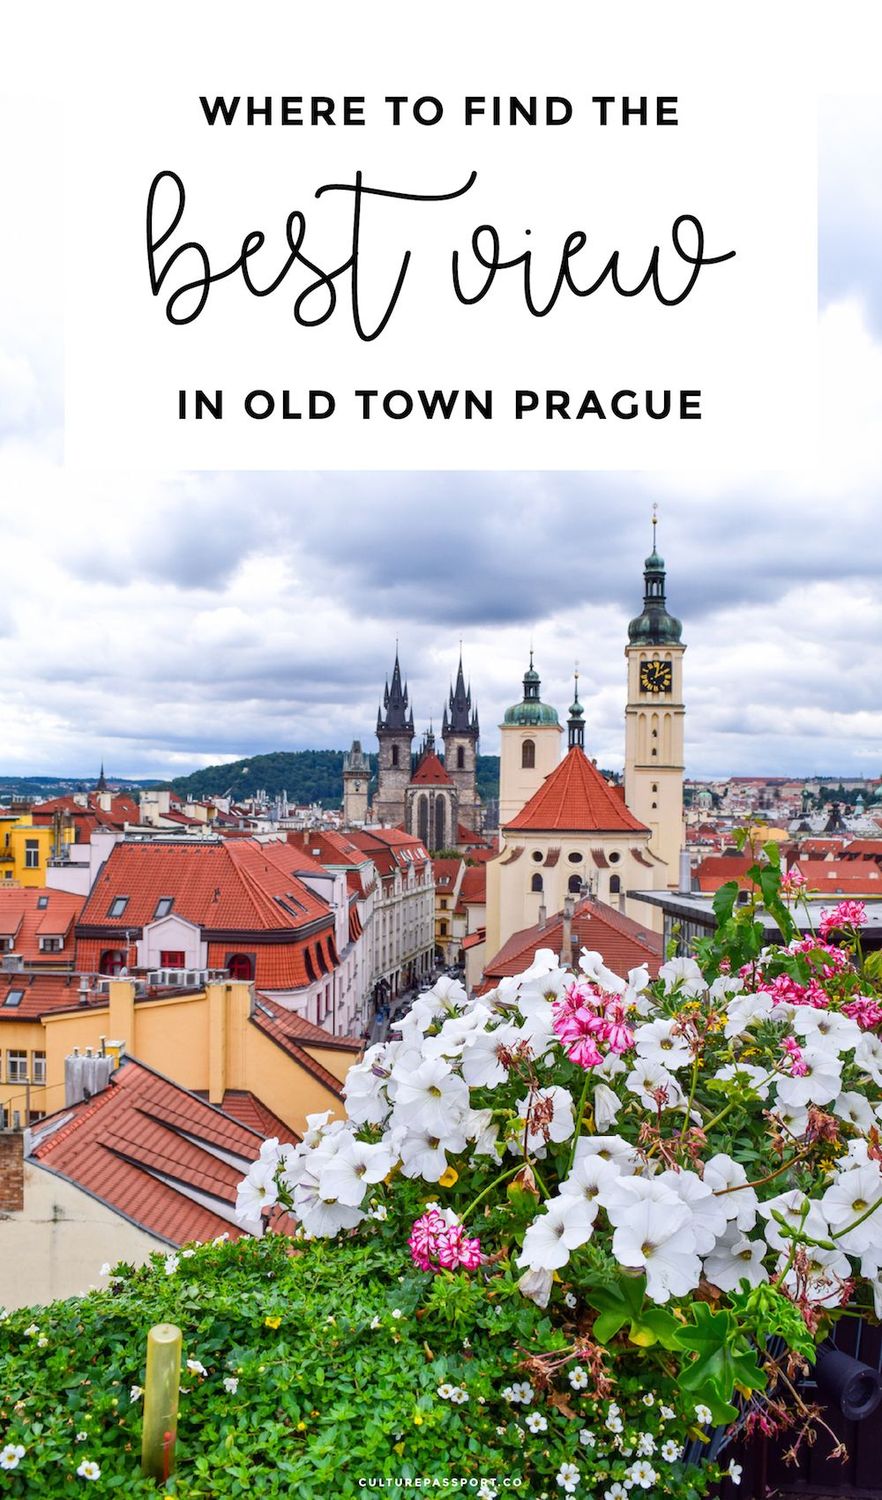 Best View in Prague, Prague Travel Guide, Old Town Prague, Best Photos in Prague